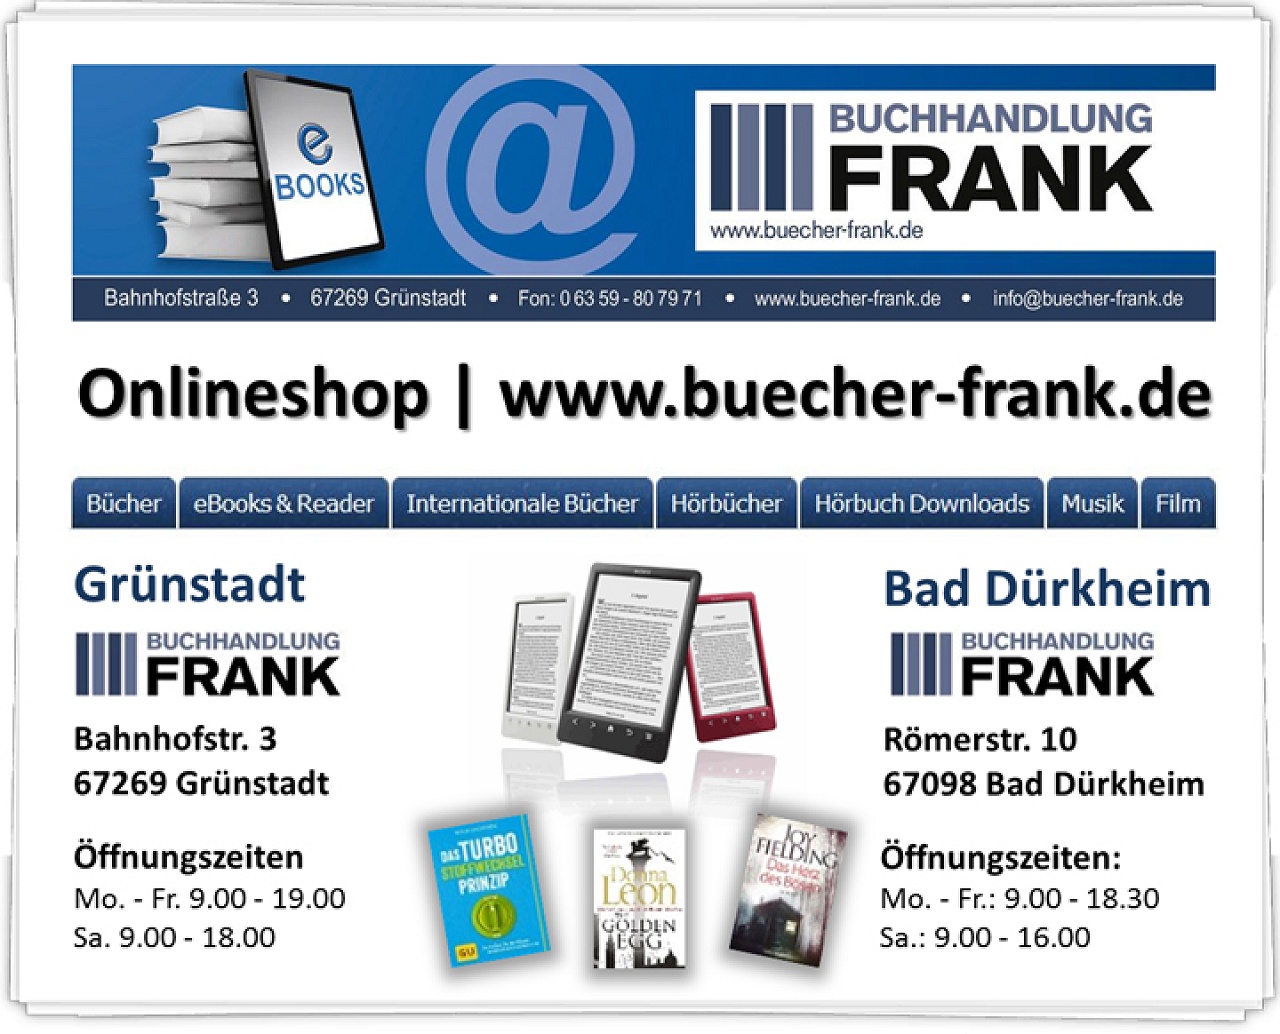 Buchhandlung und Shop Frank in Bad Dürkheim und Grünstadt